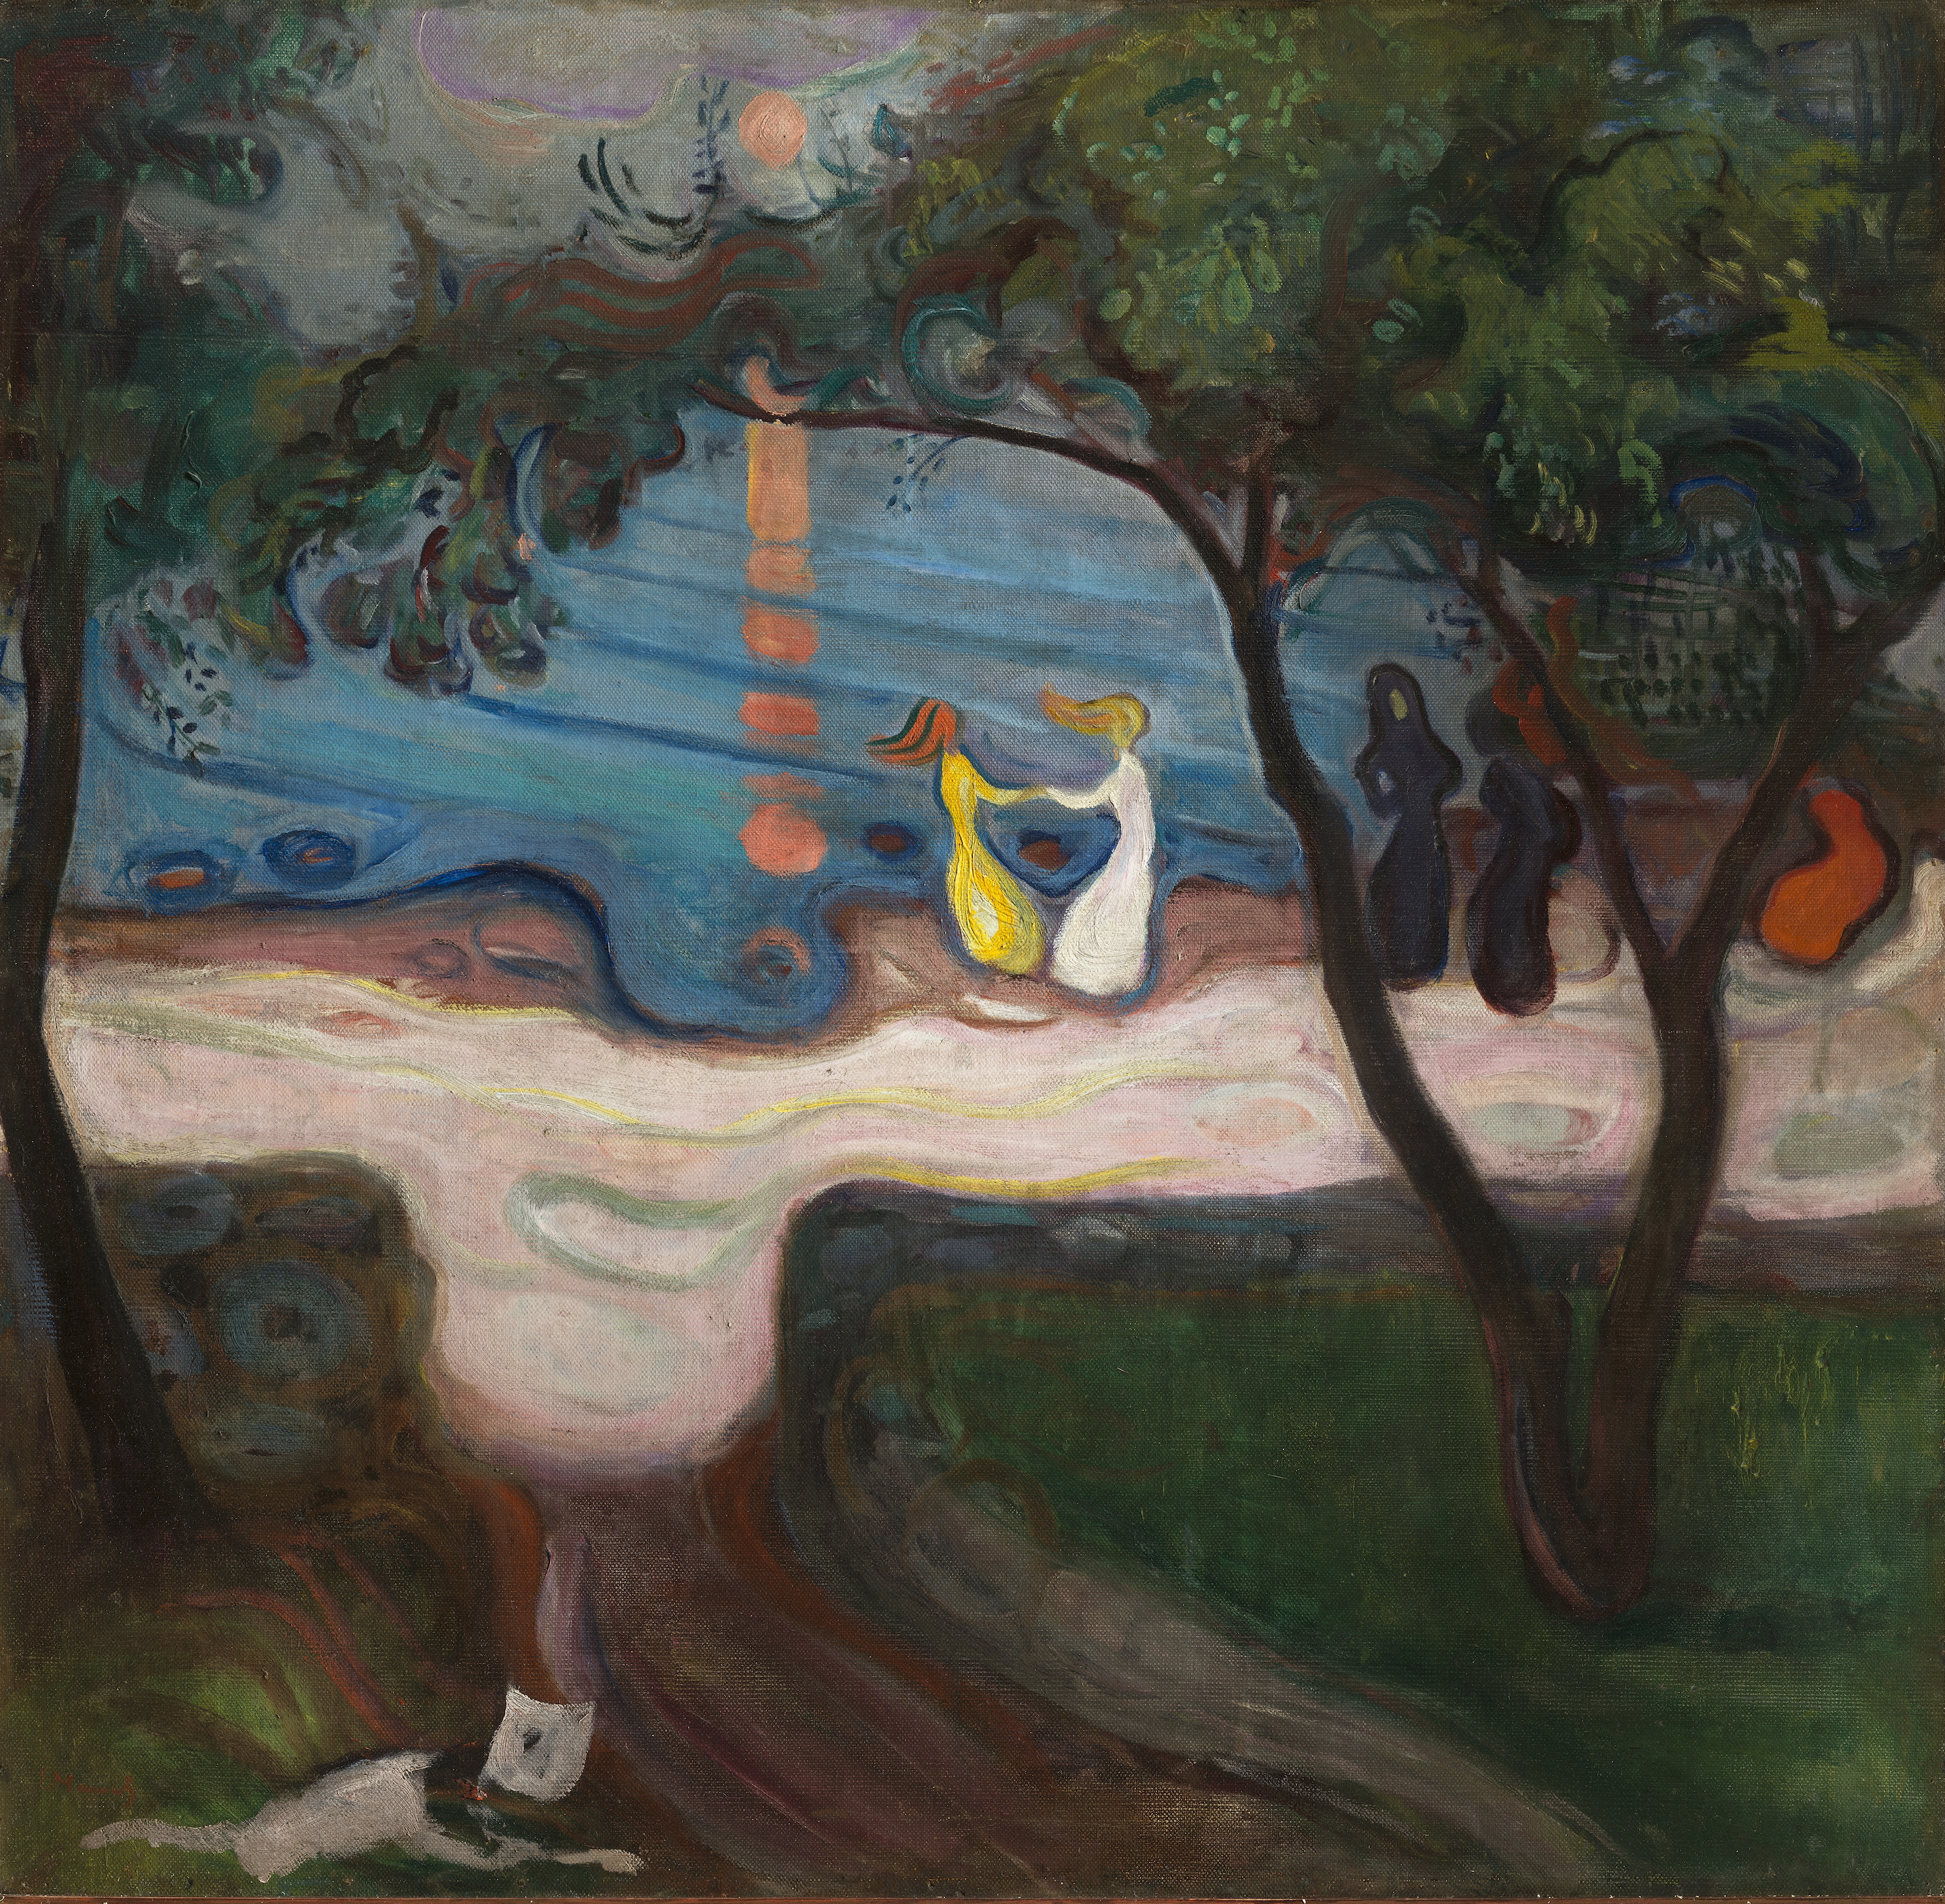 Tanec na břehu by Edvard Munch - 1900 - 95,5 x 98,5 cm 